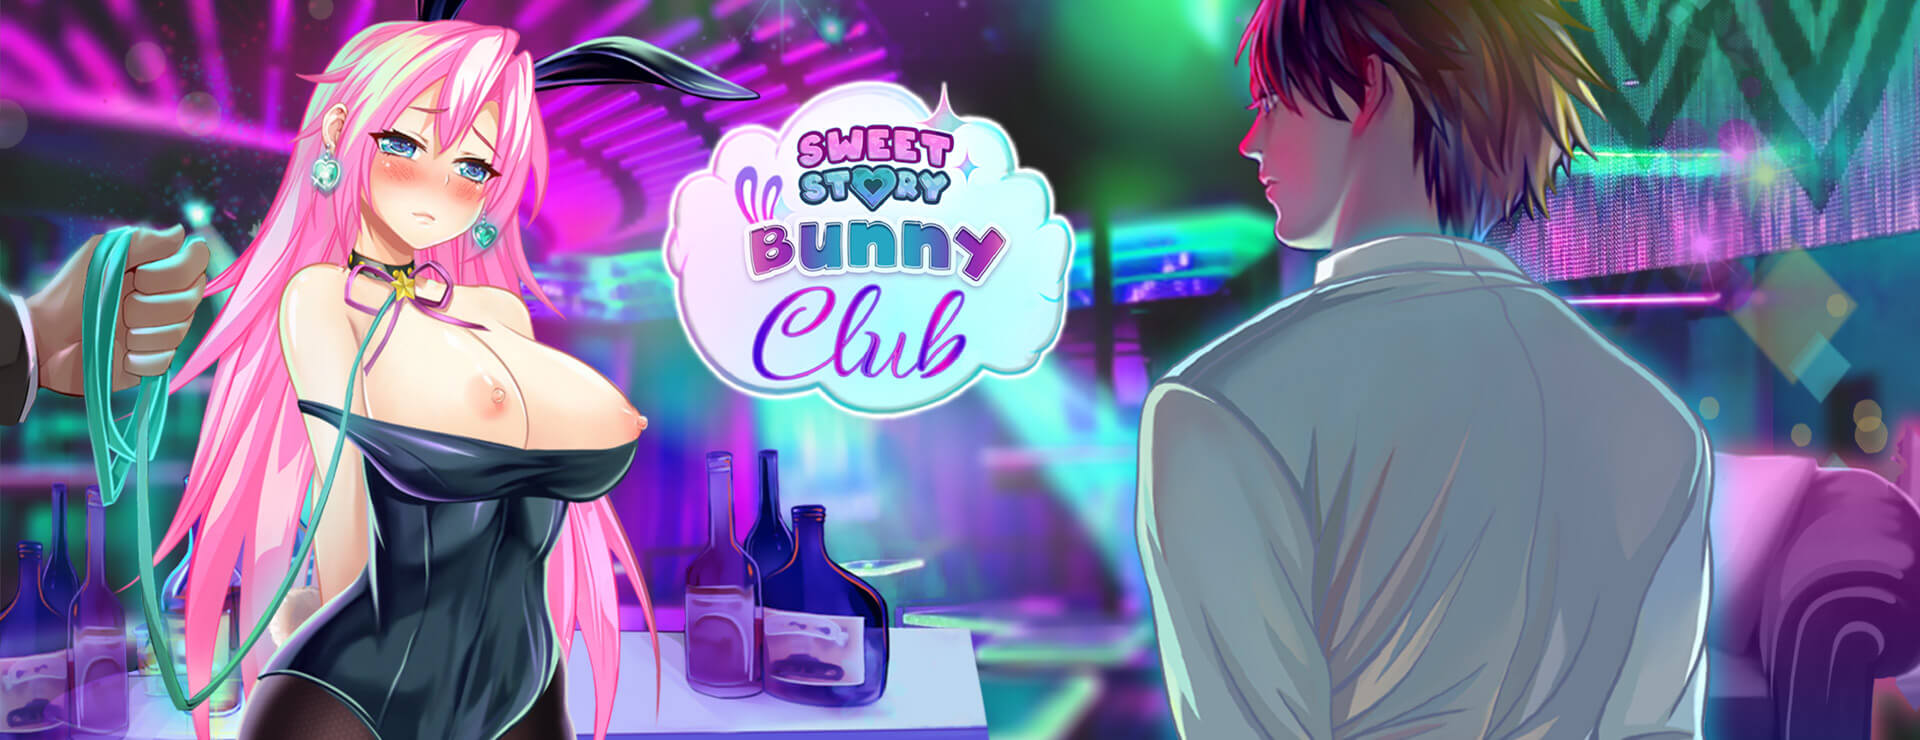 Sweet Story Bunny Club - Zwanglos  Spiel